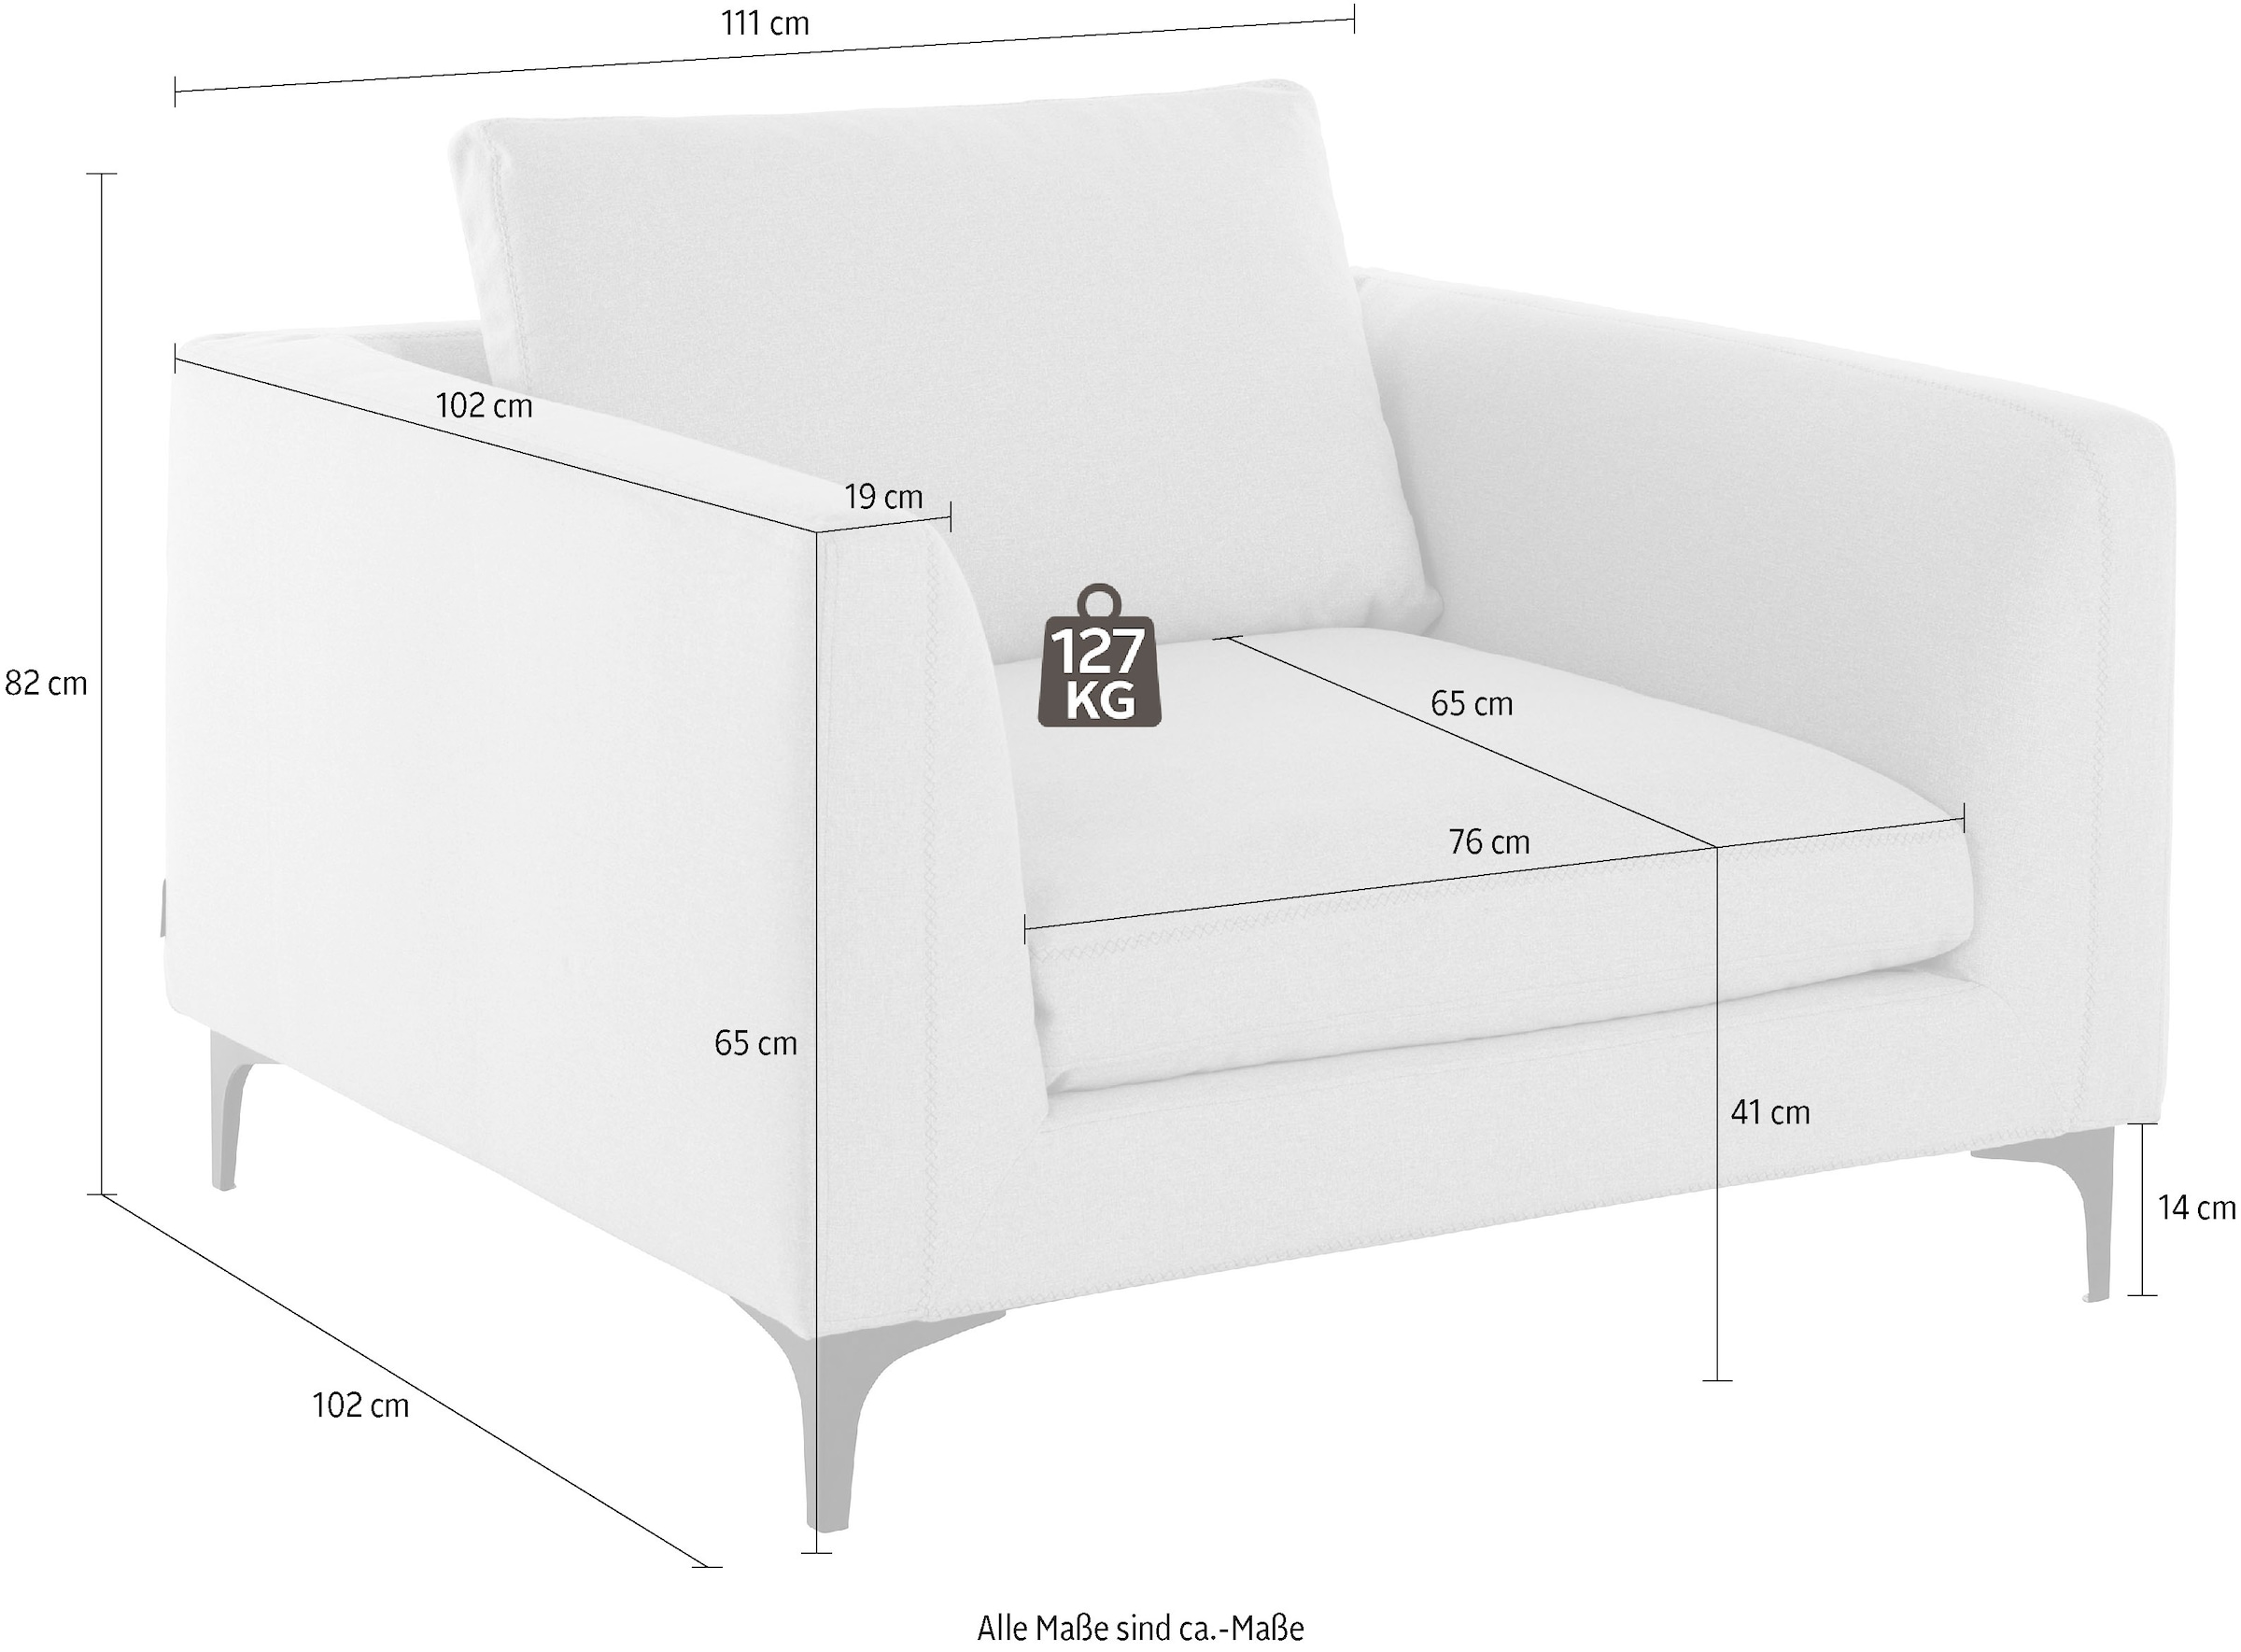 Places of Style TV-Sessel »Nixon«, mit Federn für besseren Sitzkomfort, mit schwarzen Metallbeinen